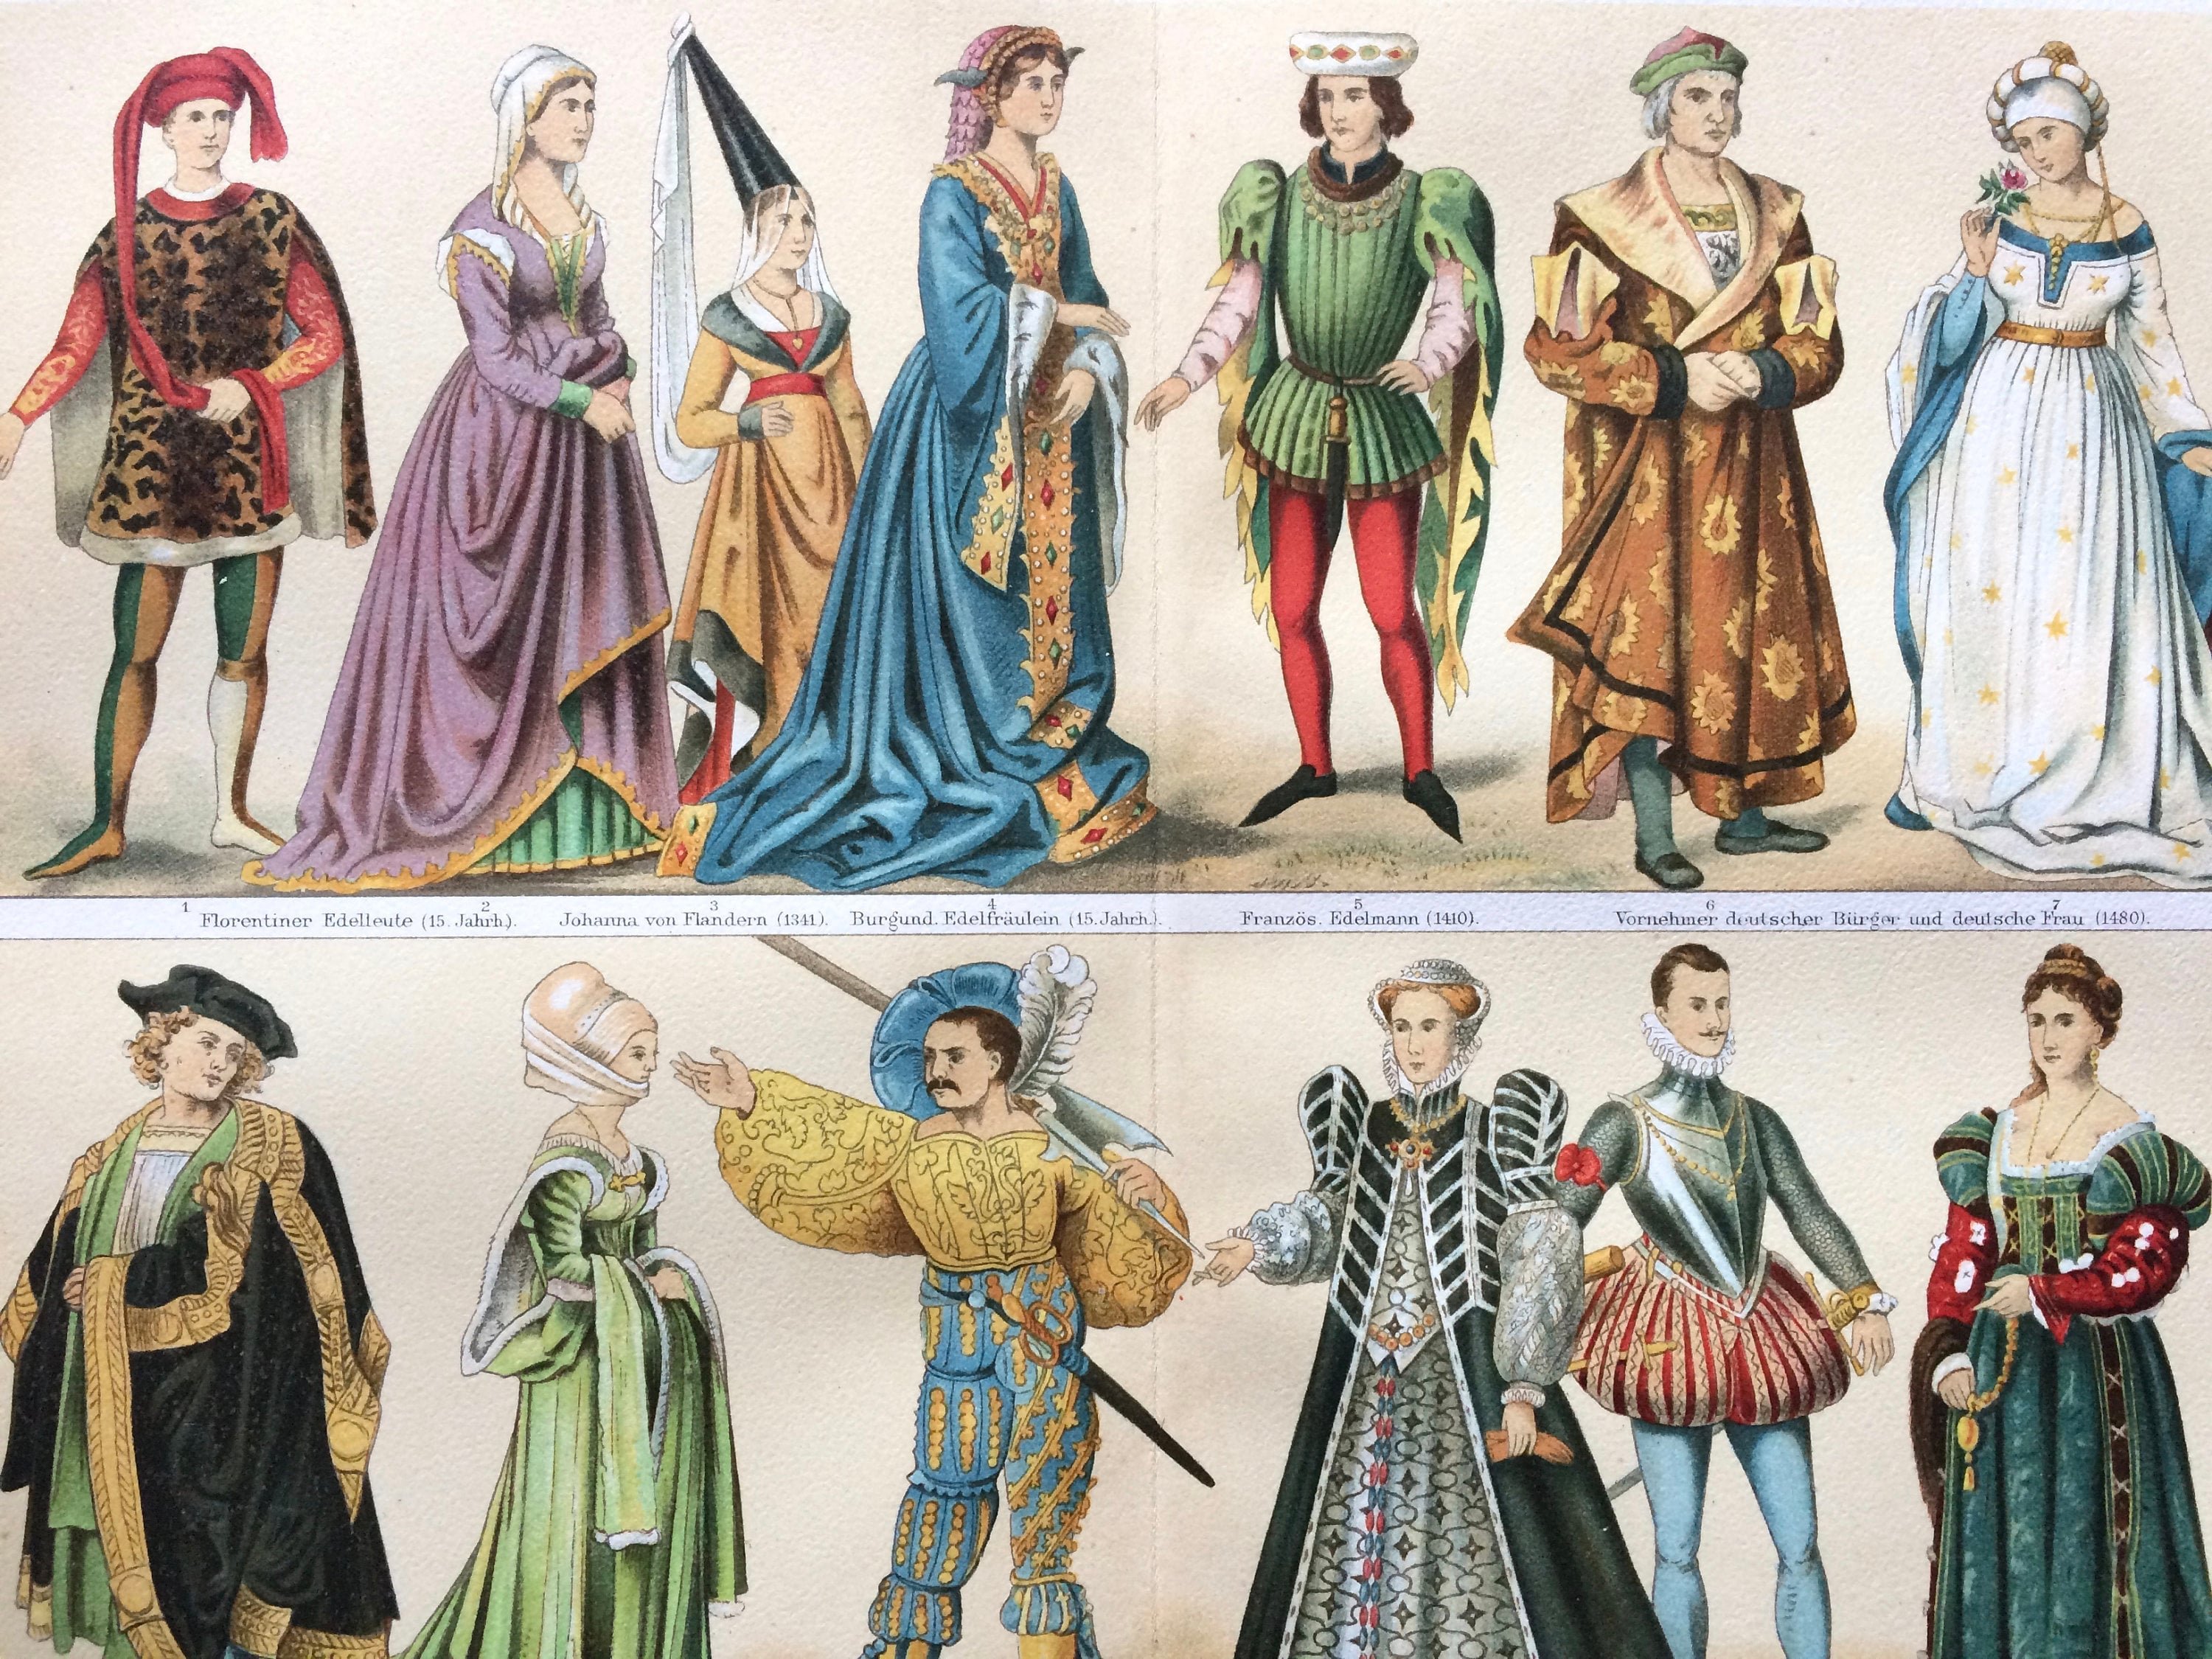 Исторический костюм век. Эпоха Возрождения 15-16 век одежда. Европа 15 век одежда. Костюм эпохи Ренессанс 16 века. Одежда дворян 15 века Европа.